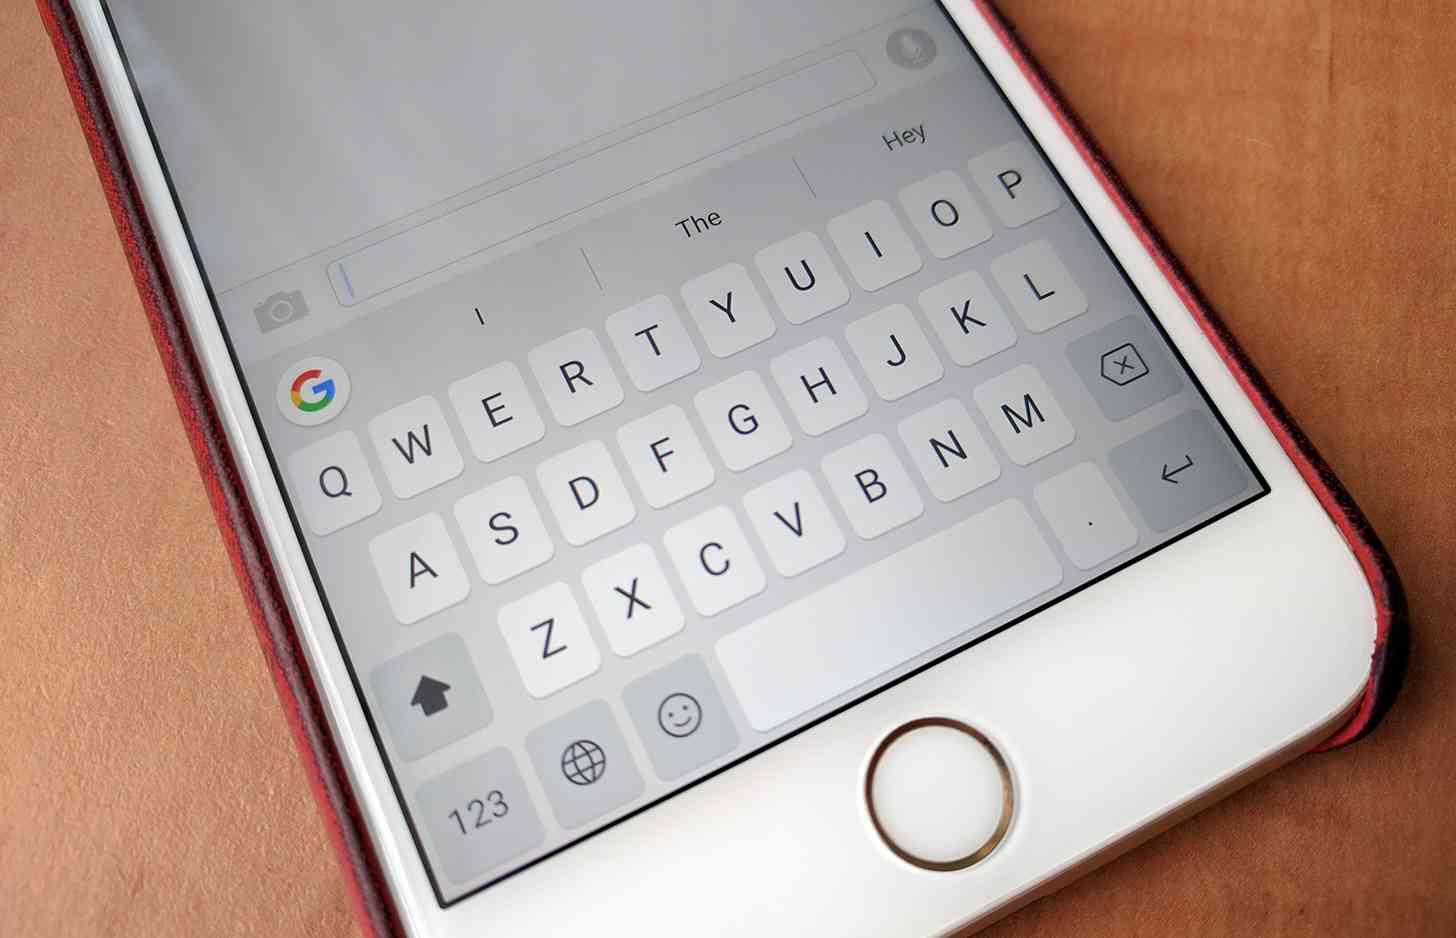 Google Gboard iOS keyboard